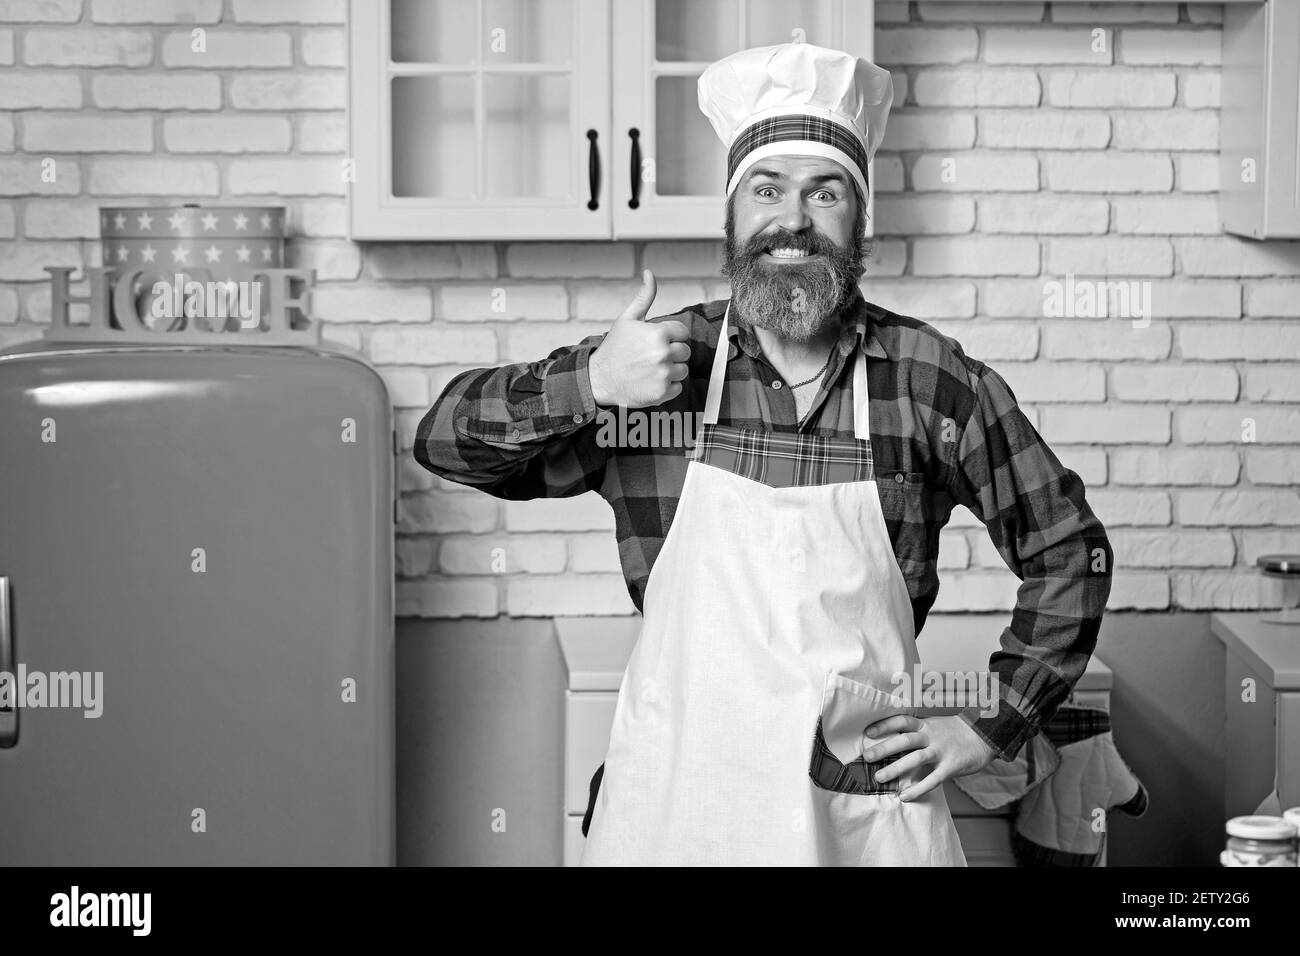 Un chef barbu sérieux et satisfait, un cuisinier ou un boulanger qui se fait un excellent geste. Banque D'Images